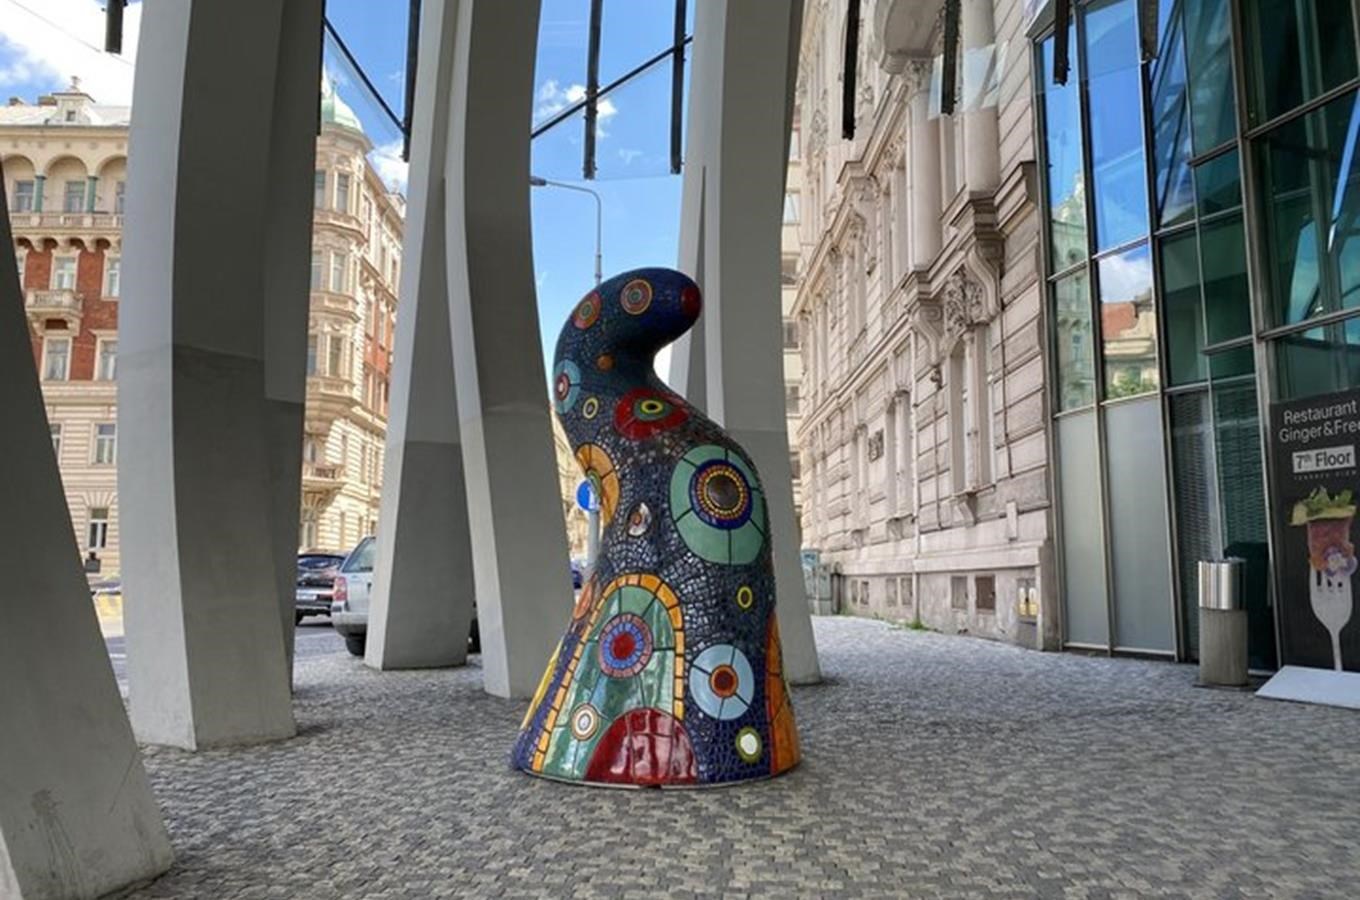 Sochařský festival Sculpture Line letos znovu propojí umělce z celého světa